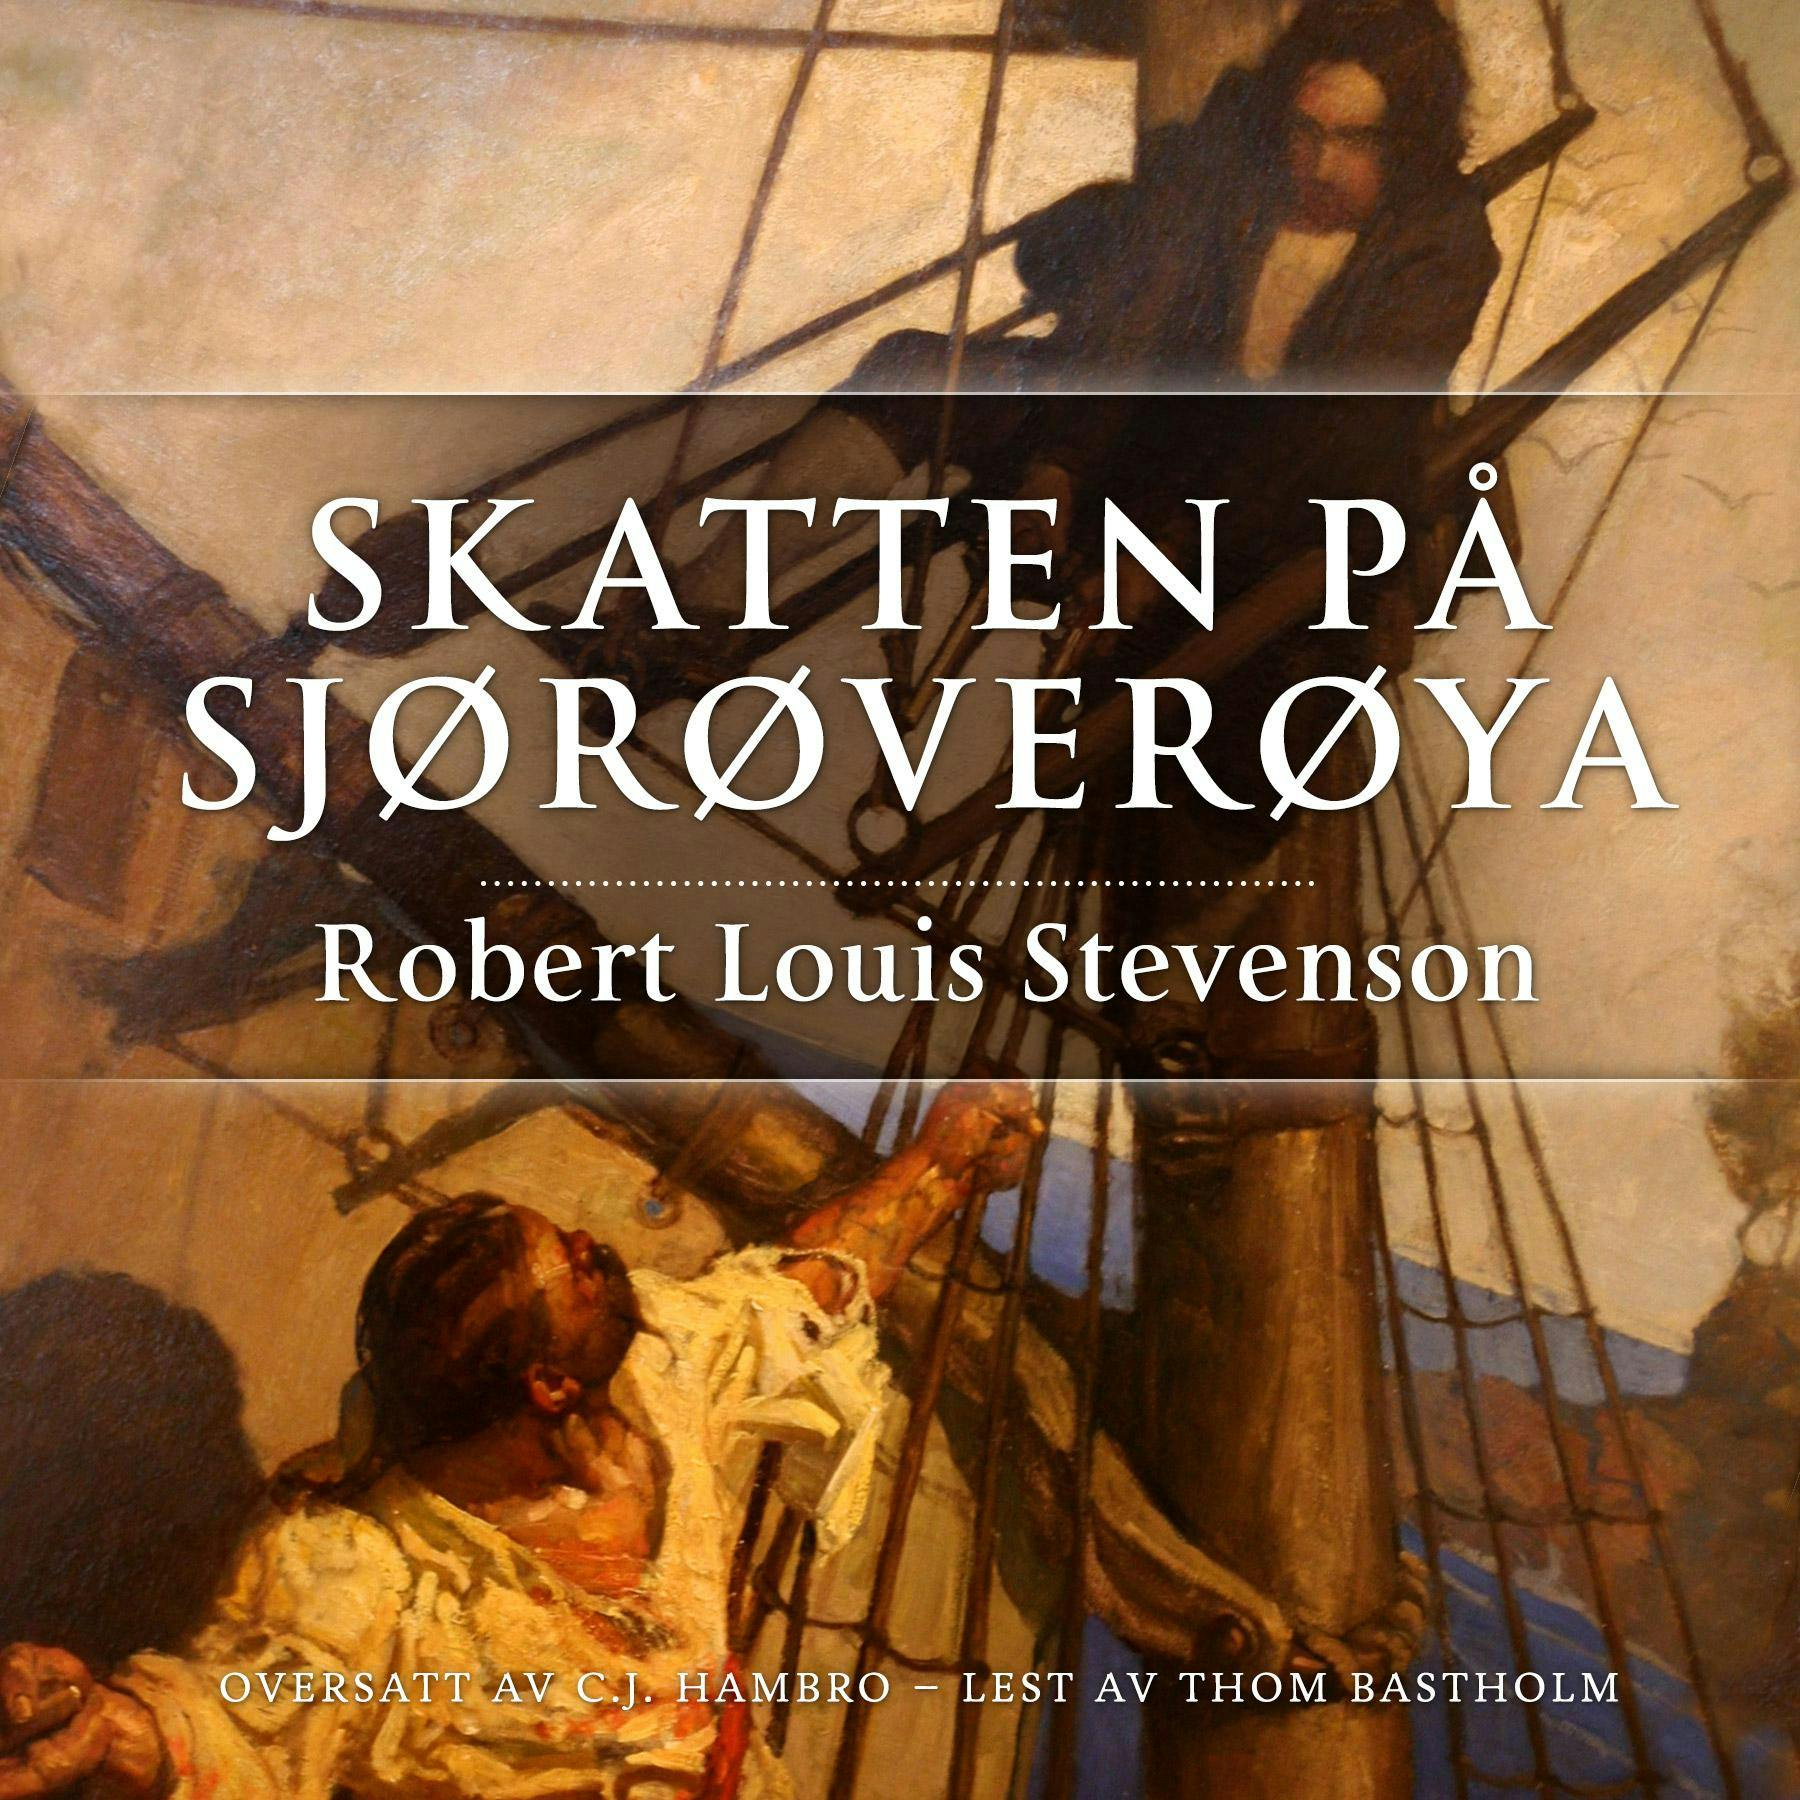 Skatten på Sjørøverøya - Robert Louis Stevenson